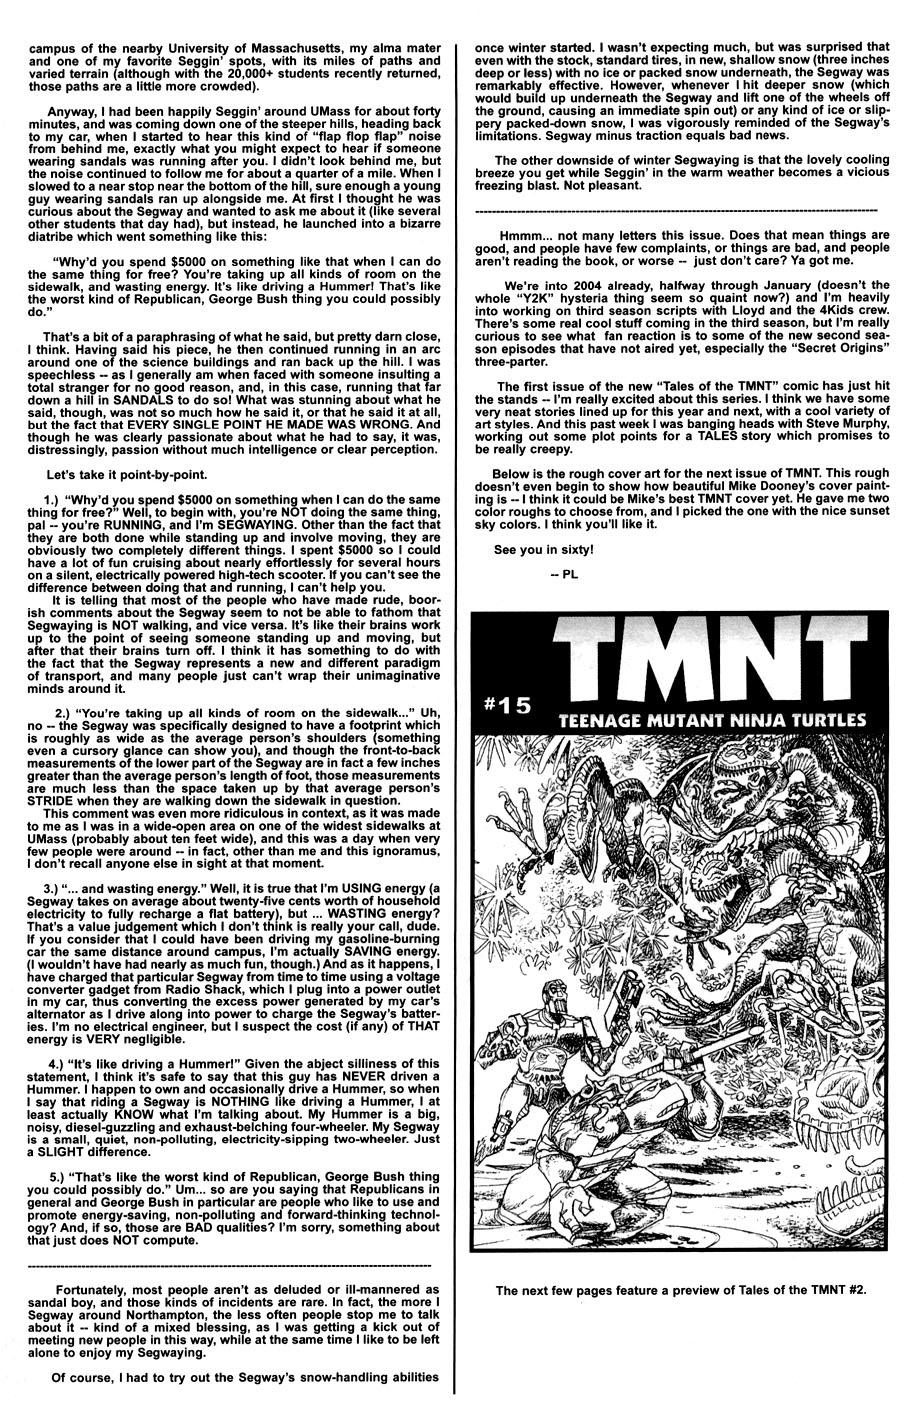 Read online TMNT: Teenage Mutant Ninja Turtles comic -  Issue #14 - 37